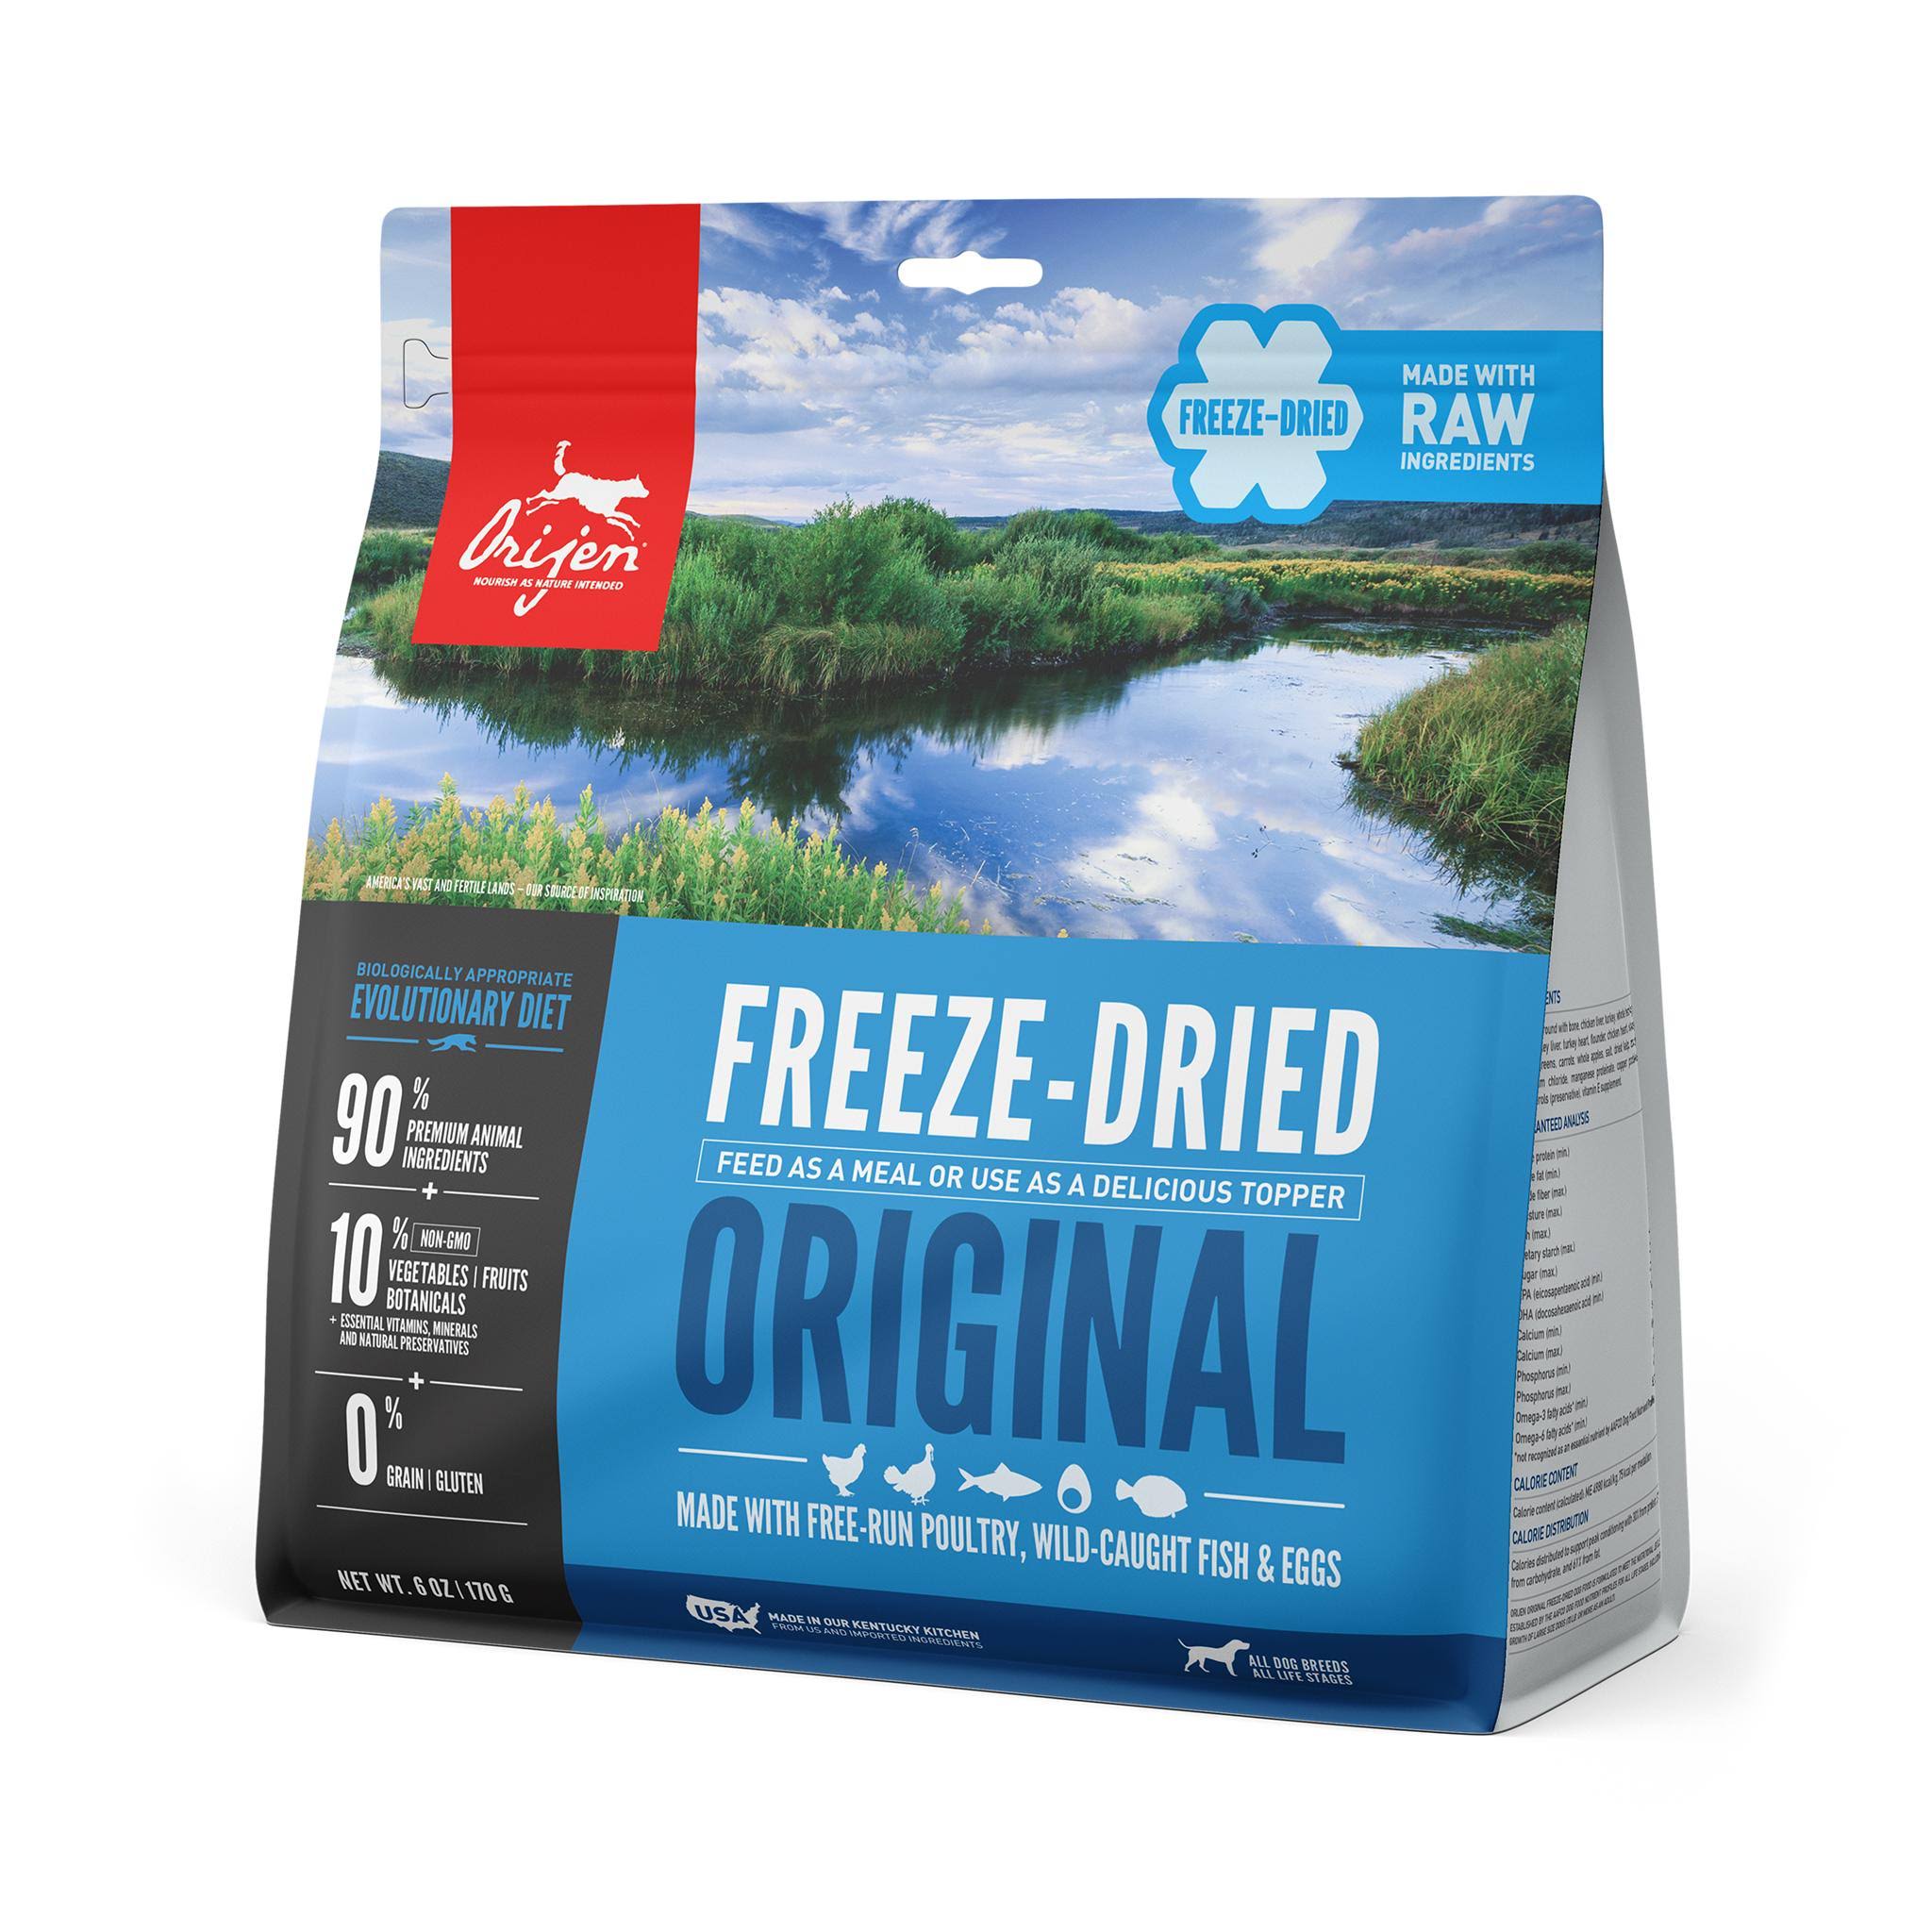 Orijen Original Freeze-Dried Dog Food - 6 oz. Bag